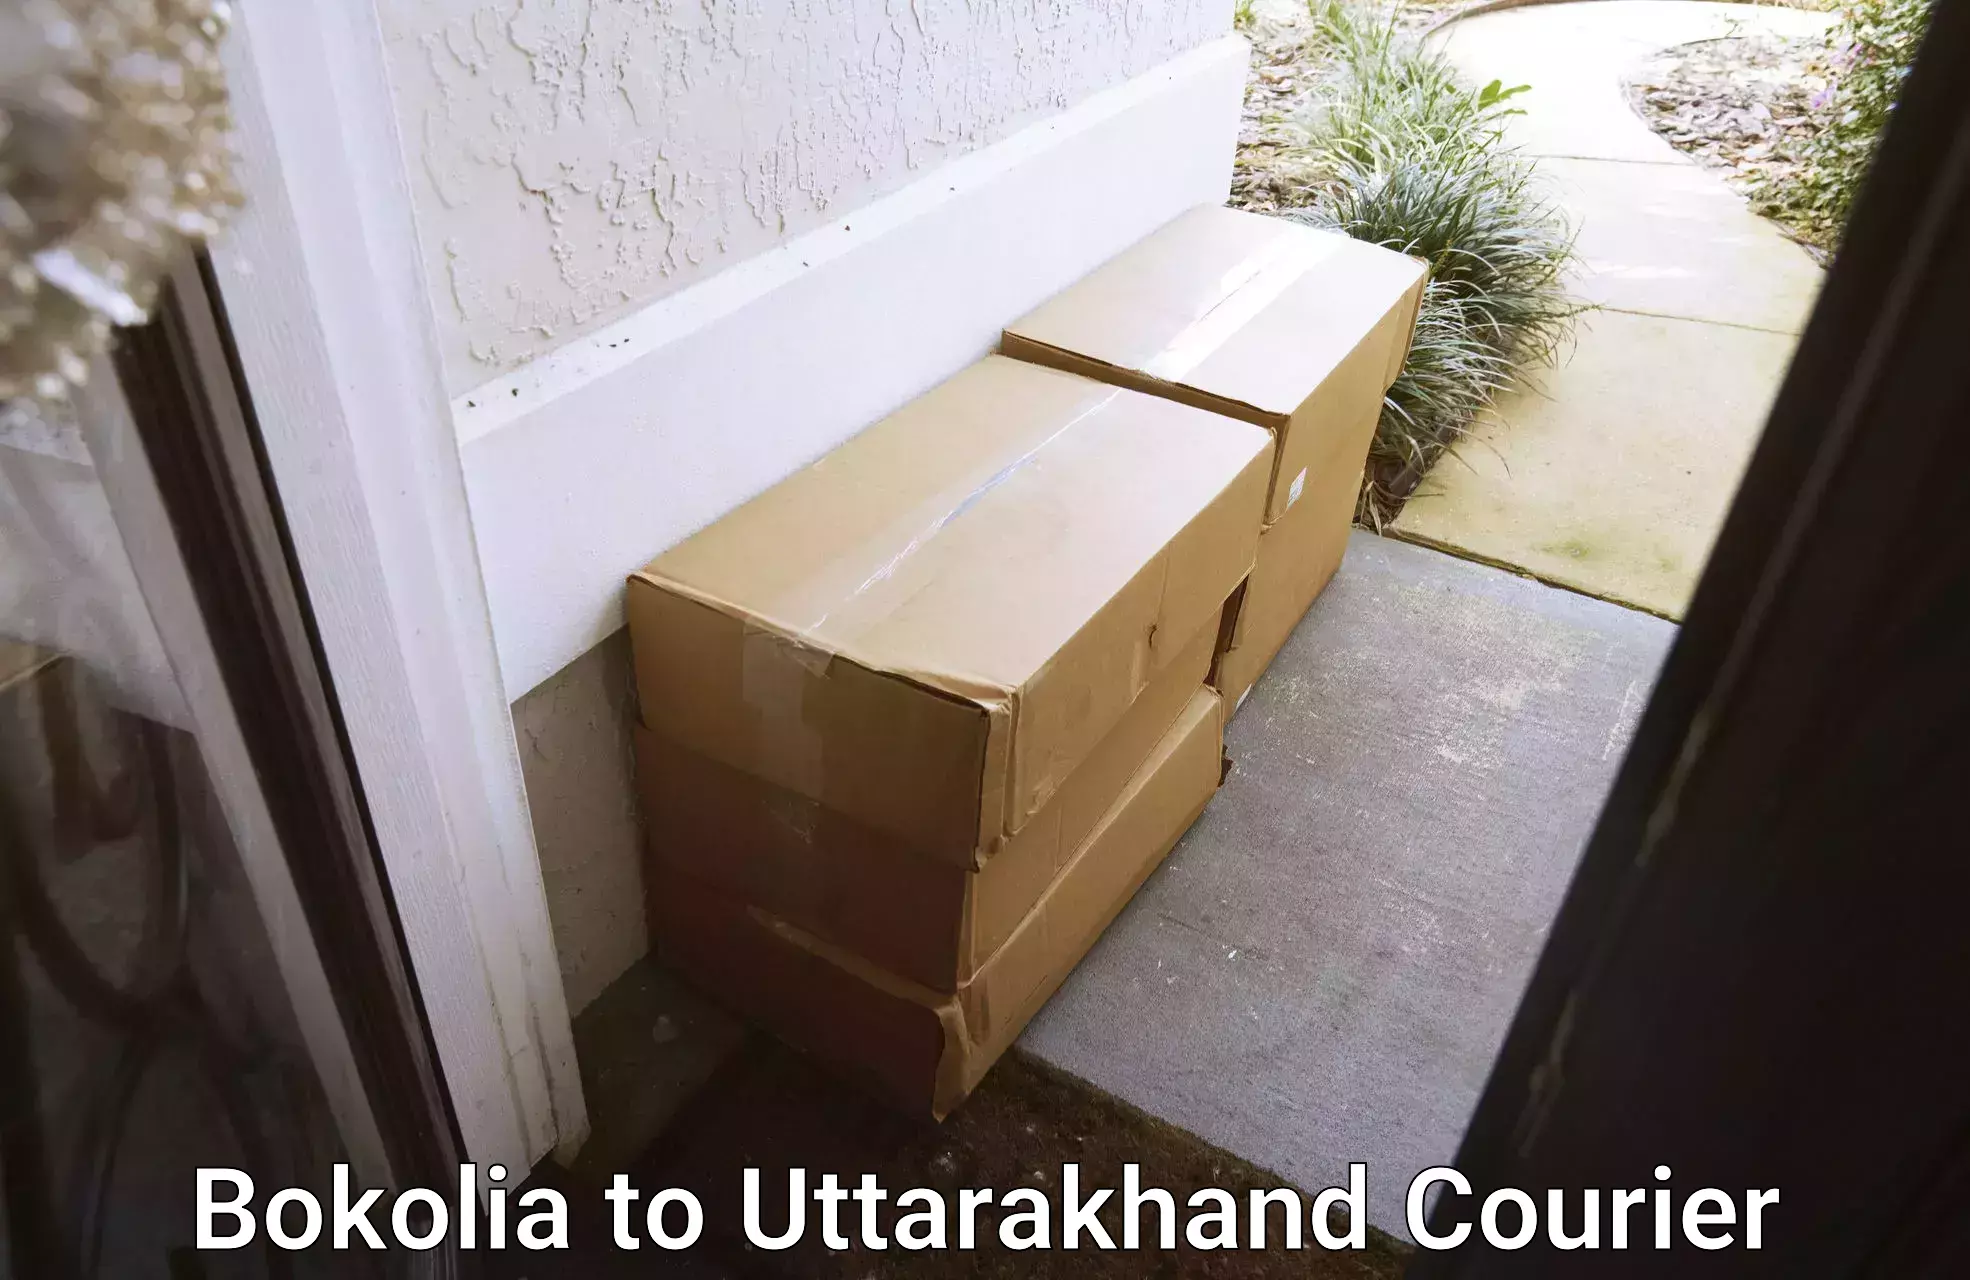 International parcel service Bokolia to Uttarakhand